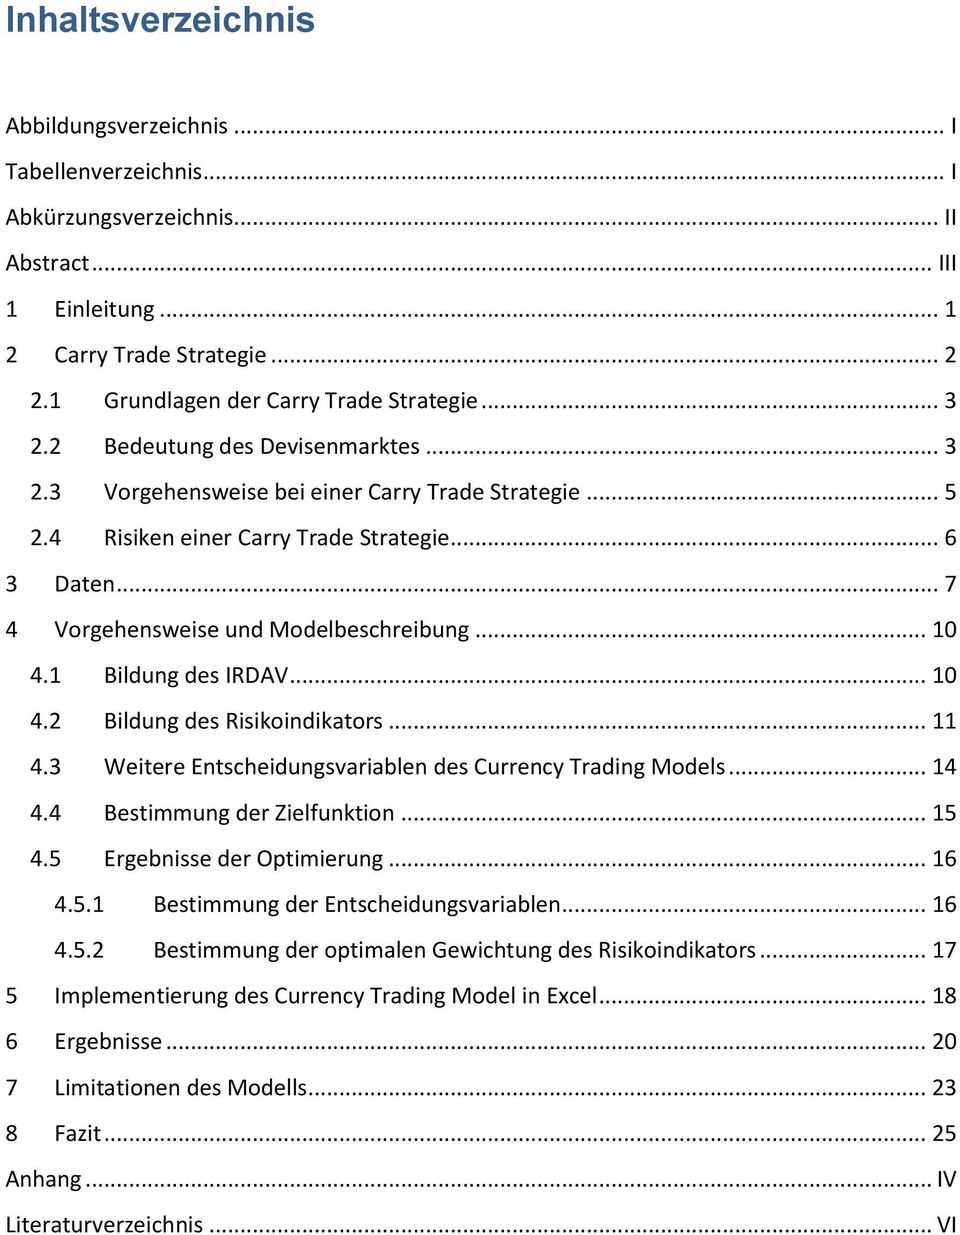 .. 7 4 Vorgehensweise und Modelbeschreibung... 10 4.1 Bildung des IRDAV... 10 4.2 Bildung des Risikoindikators... 11 4.3 Weitere Entscheidungsvariablen des Currency Trading Models... 14 4.